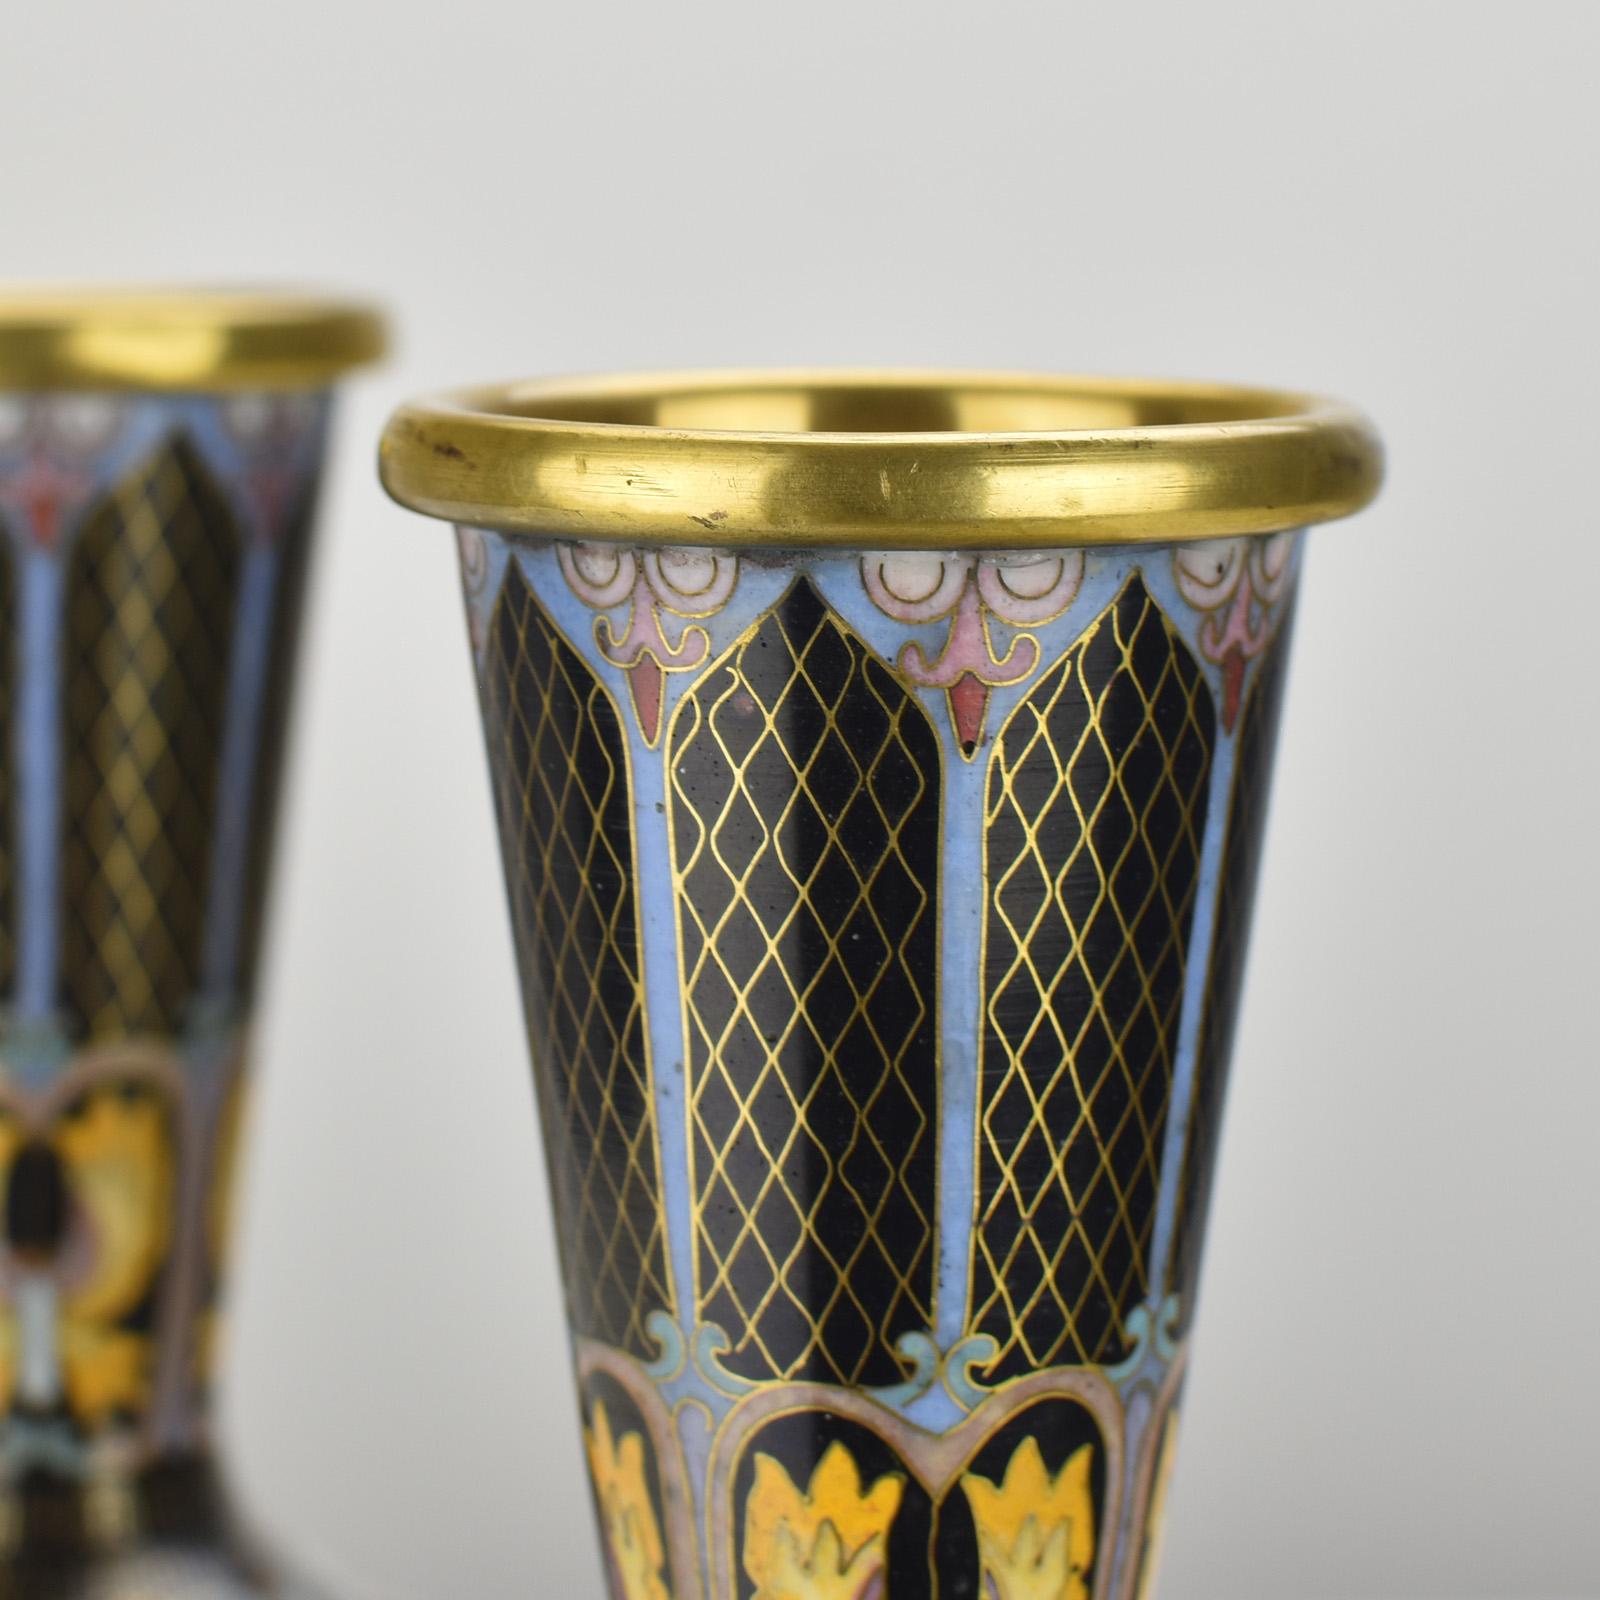 Das feine Paar verspiegelter vergoldeter Cloisonné-Emaille-Schmetterlingsvasen aus der Mitte des 20. Jahrhunderts ist ein exquisites Beispiel für chinesische Kunst und Handwerkskunst. Diese Vasen vereinen mehrere komplizierte und delikate Techniken,